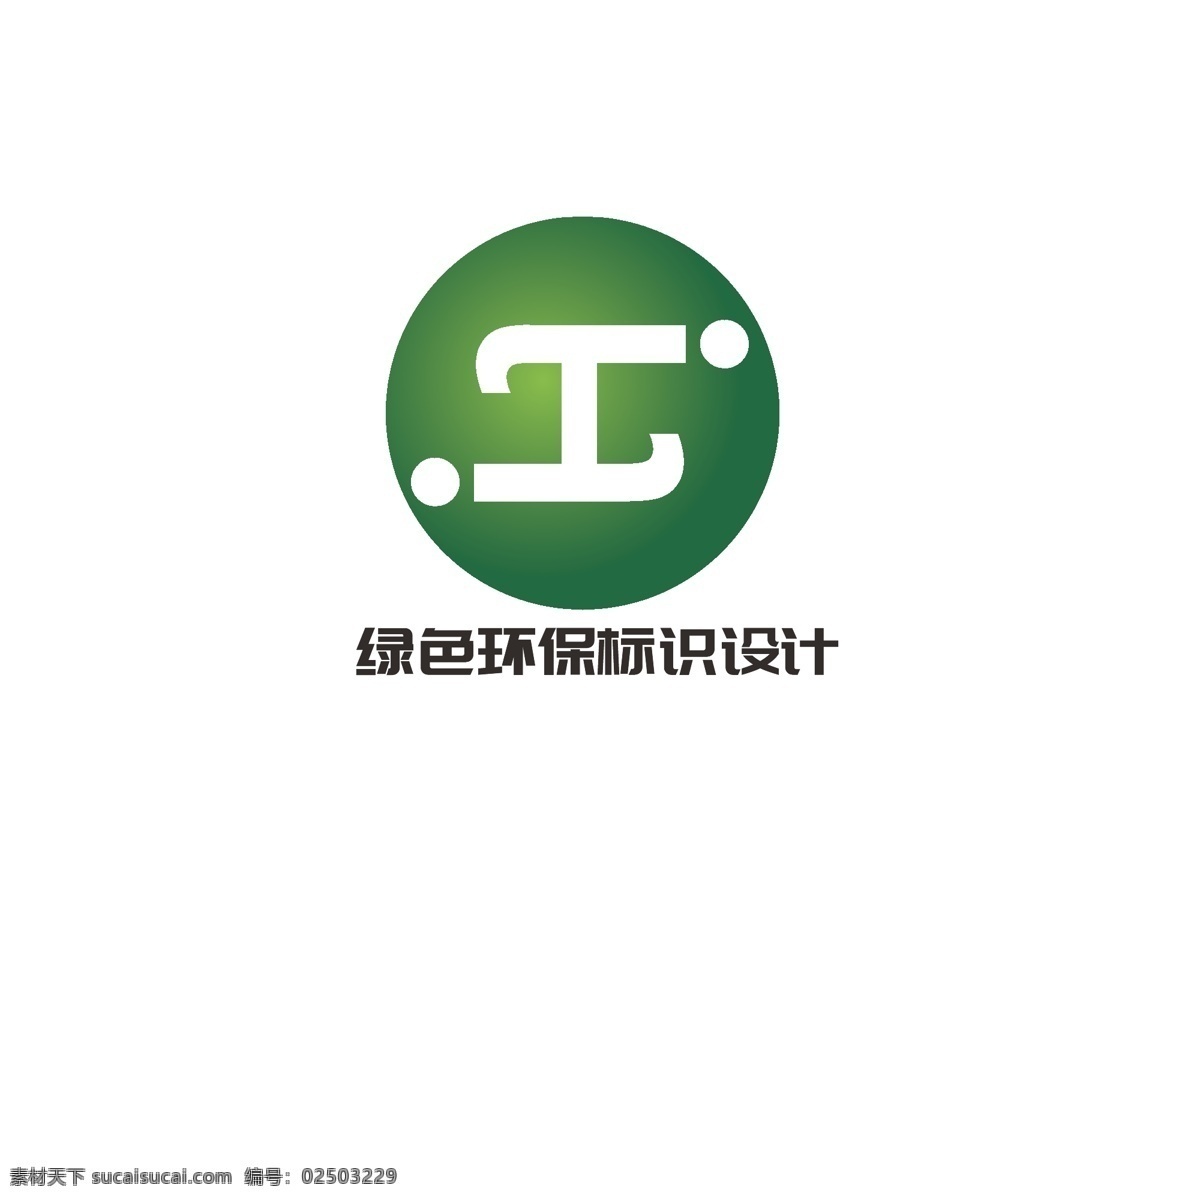 绿色环保 标识设计 绿色 环保 简约 汉字 任务 工字 字母h 字母s